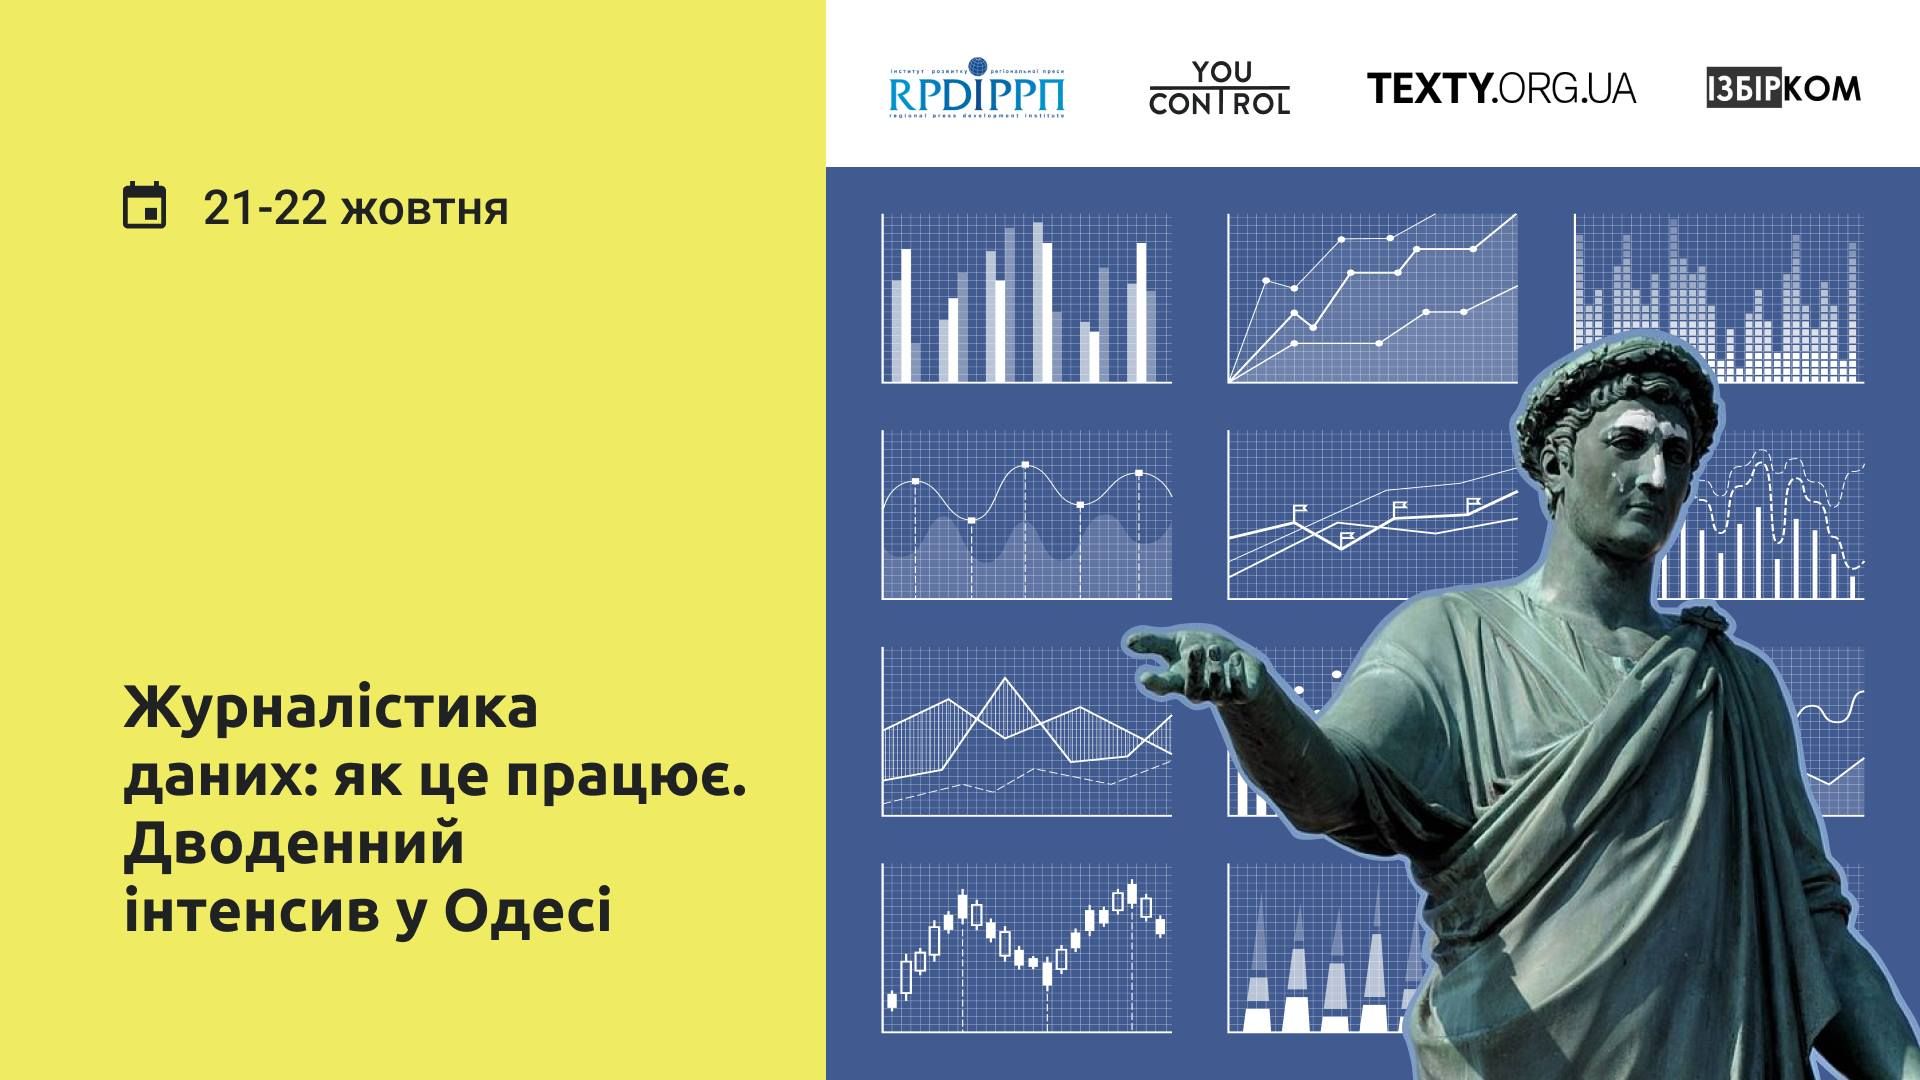 До 4 жовтня — прийом заявок на дводенний інтенсив в Одесі «Журналістика даних: як це працює»